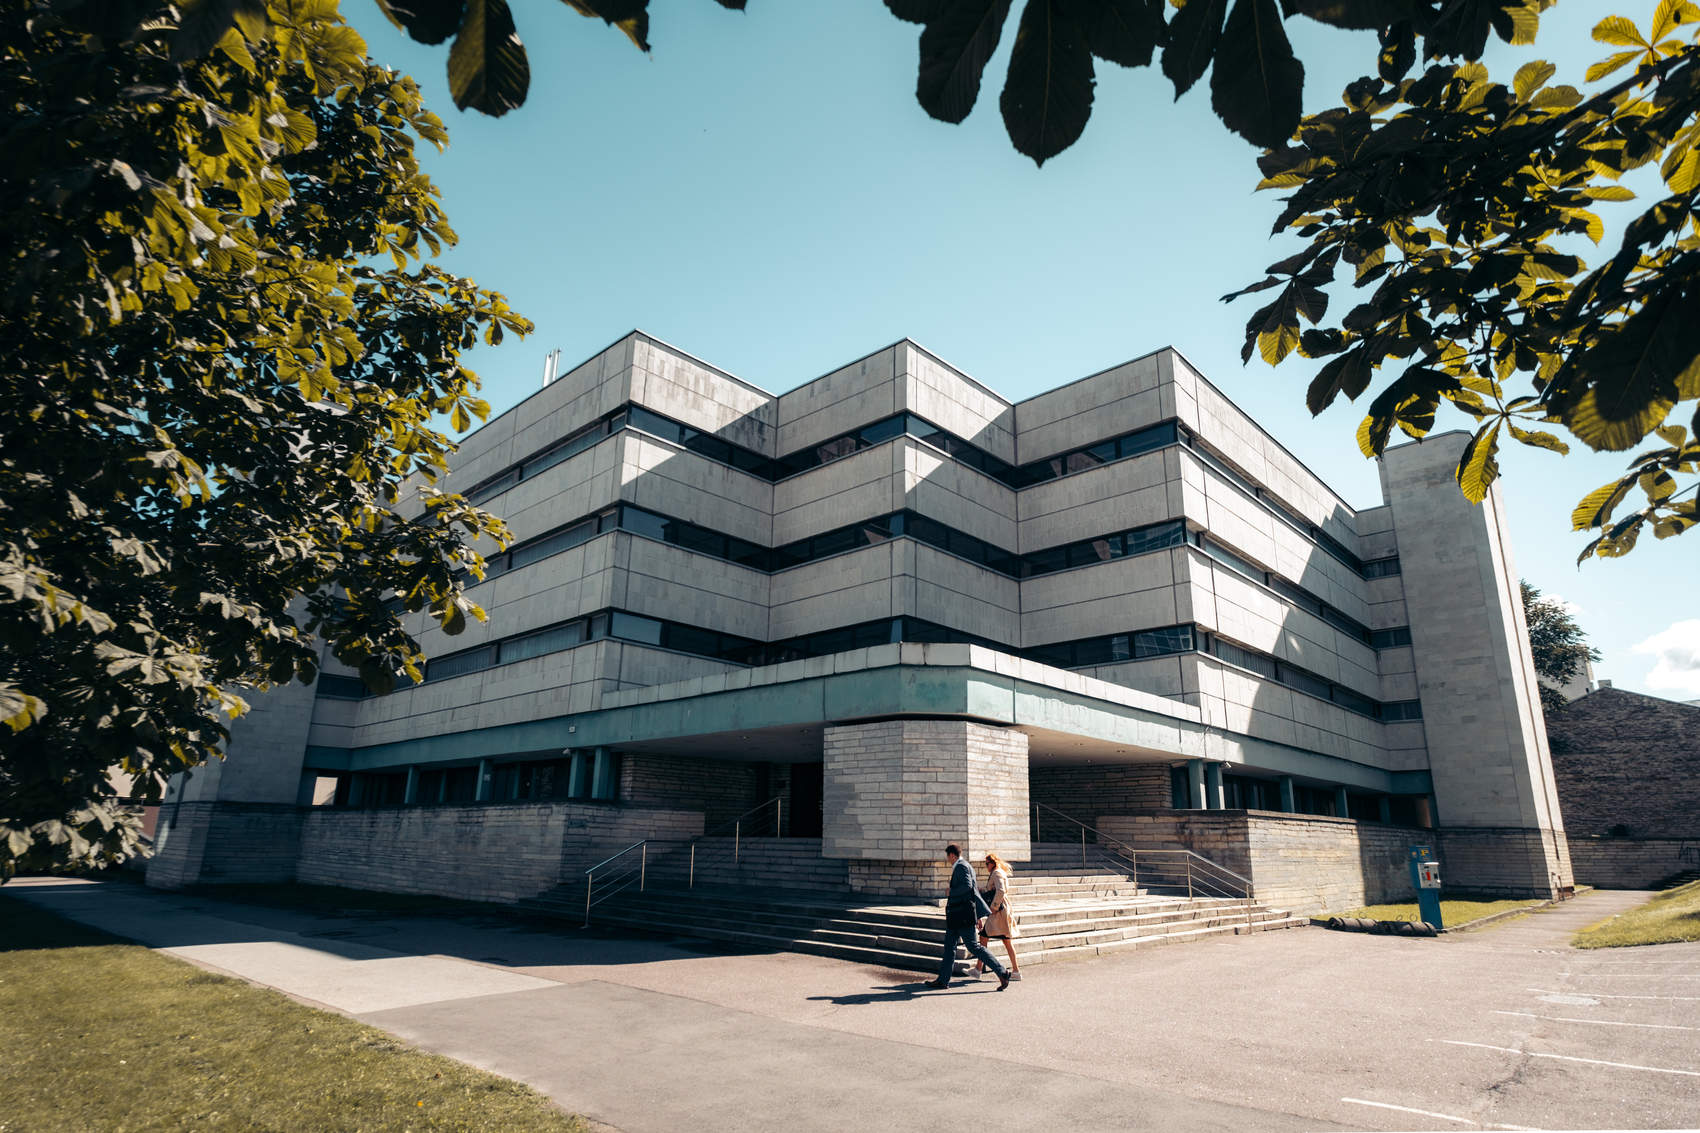 Места съемок фильма «Довод» в Таллинне, Эстония: здание бывшего суда на улице Liivalaia в роли здания Wermuth-Bygningen. Фотография: Kadi-Liis Koppel